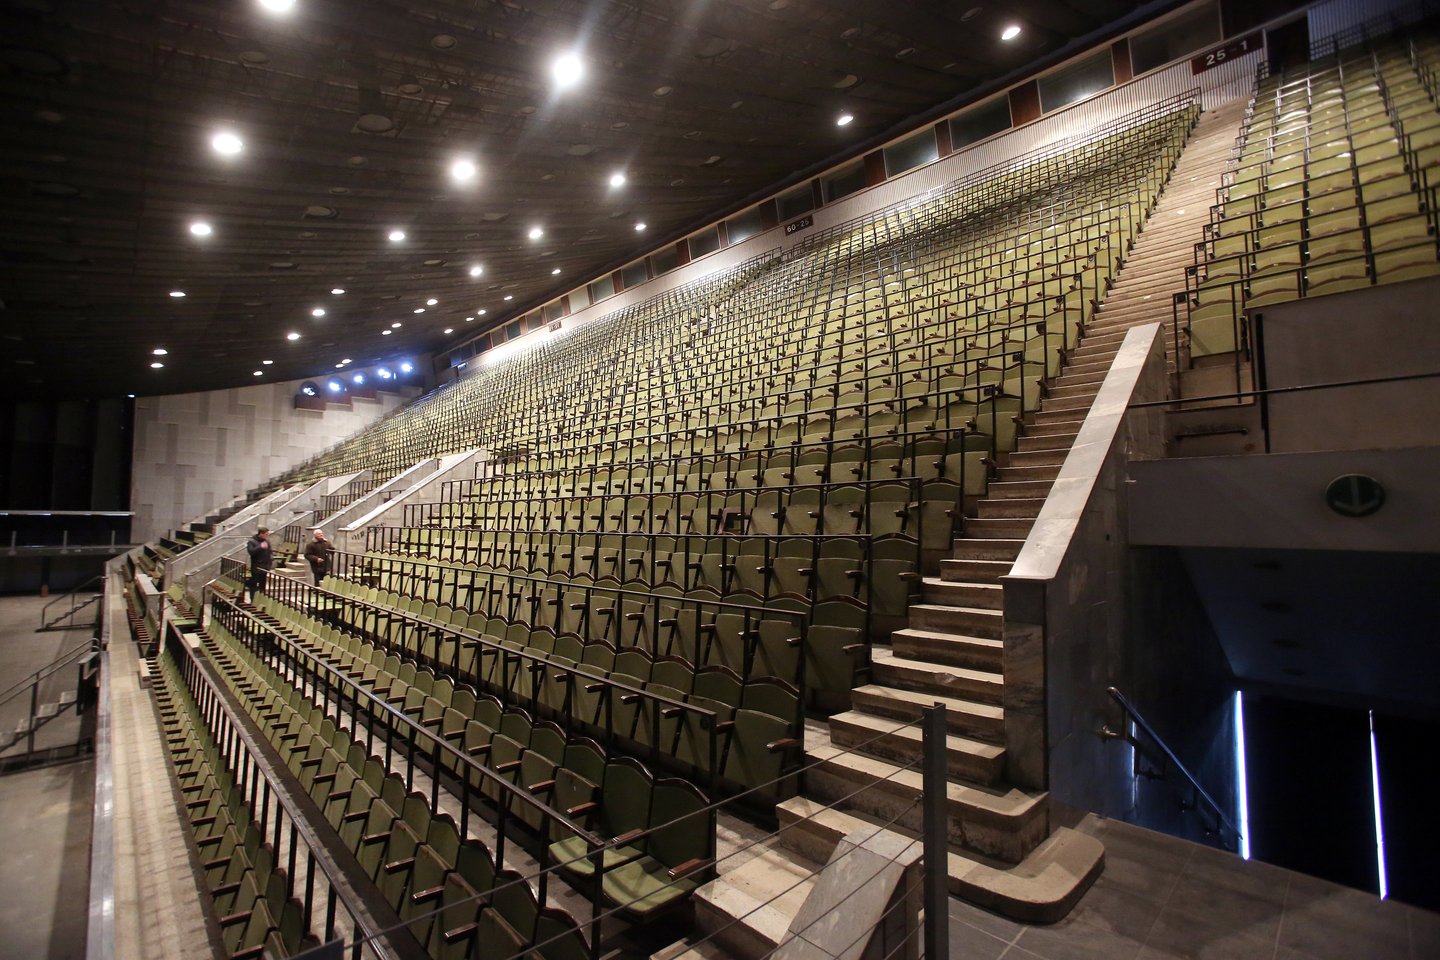 Nebenaudojamų Vilniaus koncertų ir sporto rūmų rekonstrukcija ir Konferencijų bei kongresų rūmų įrengimas kainuos 28,3 mln. eurų.<br>R.Danisevičiaus nuotr.